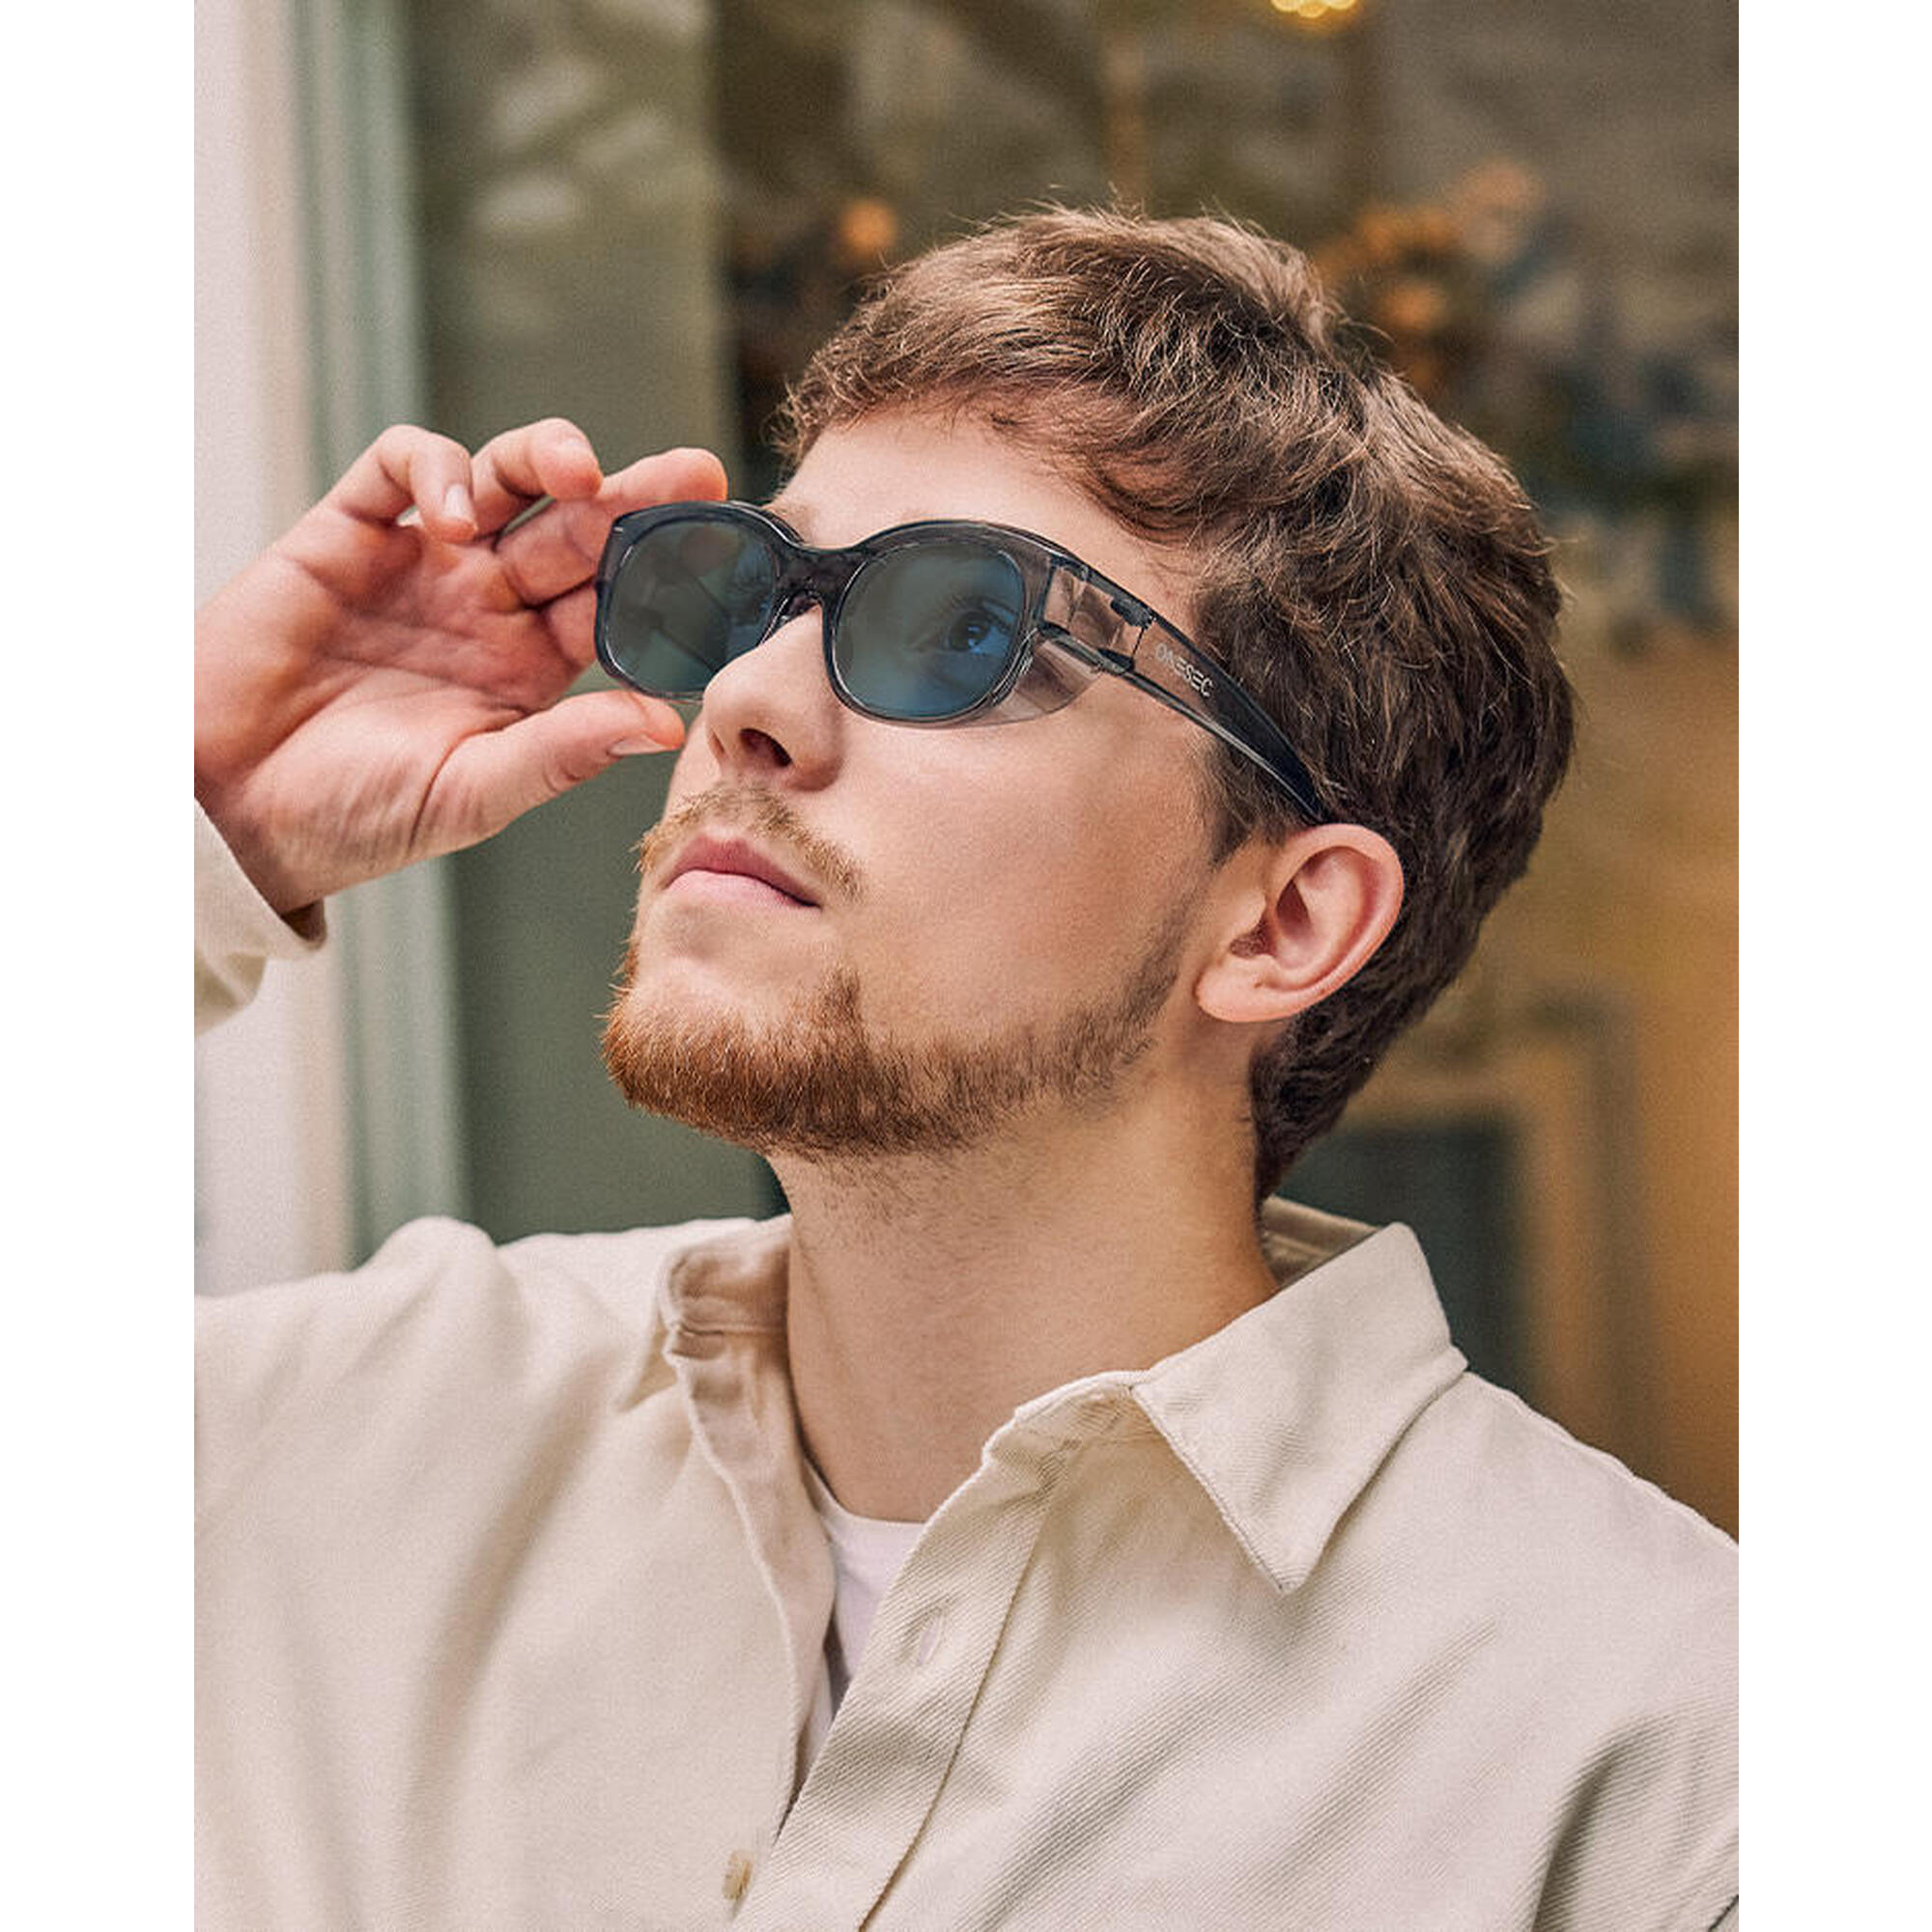 ABNER Electrochromic Lenses Sunglasses - Grey